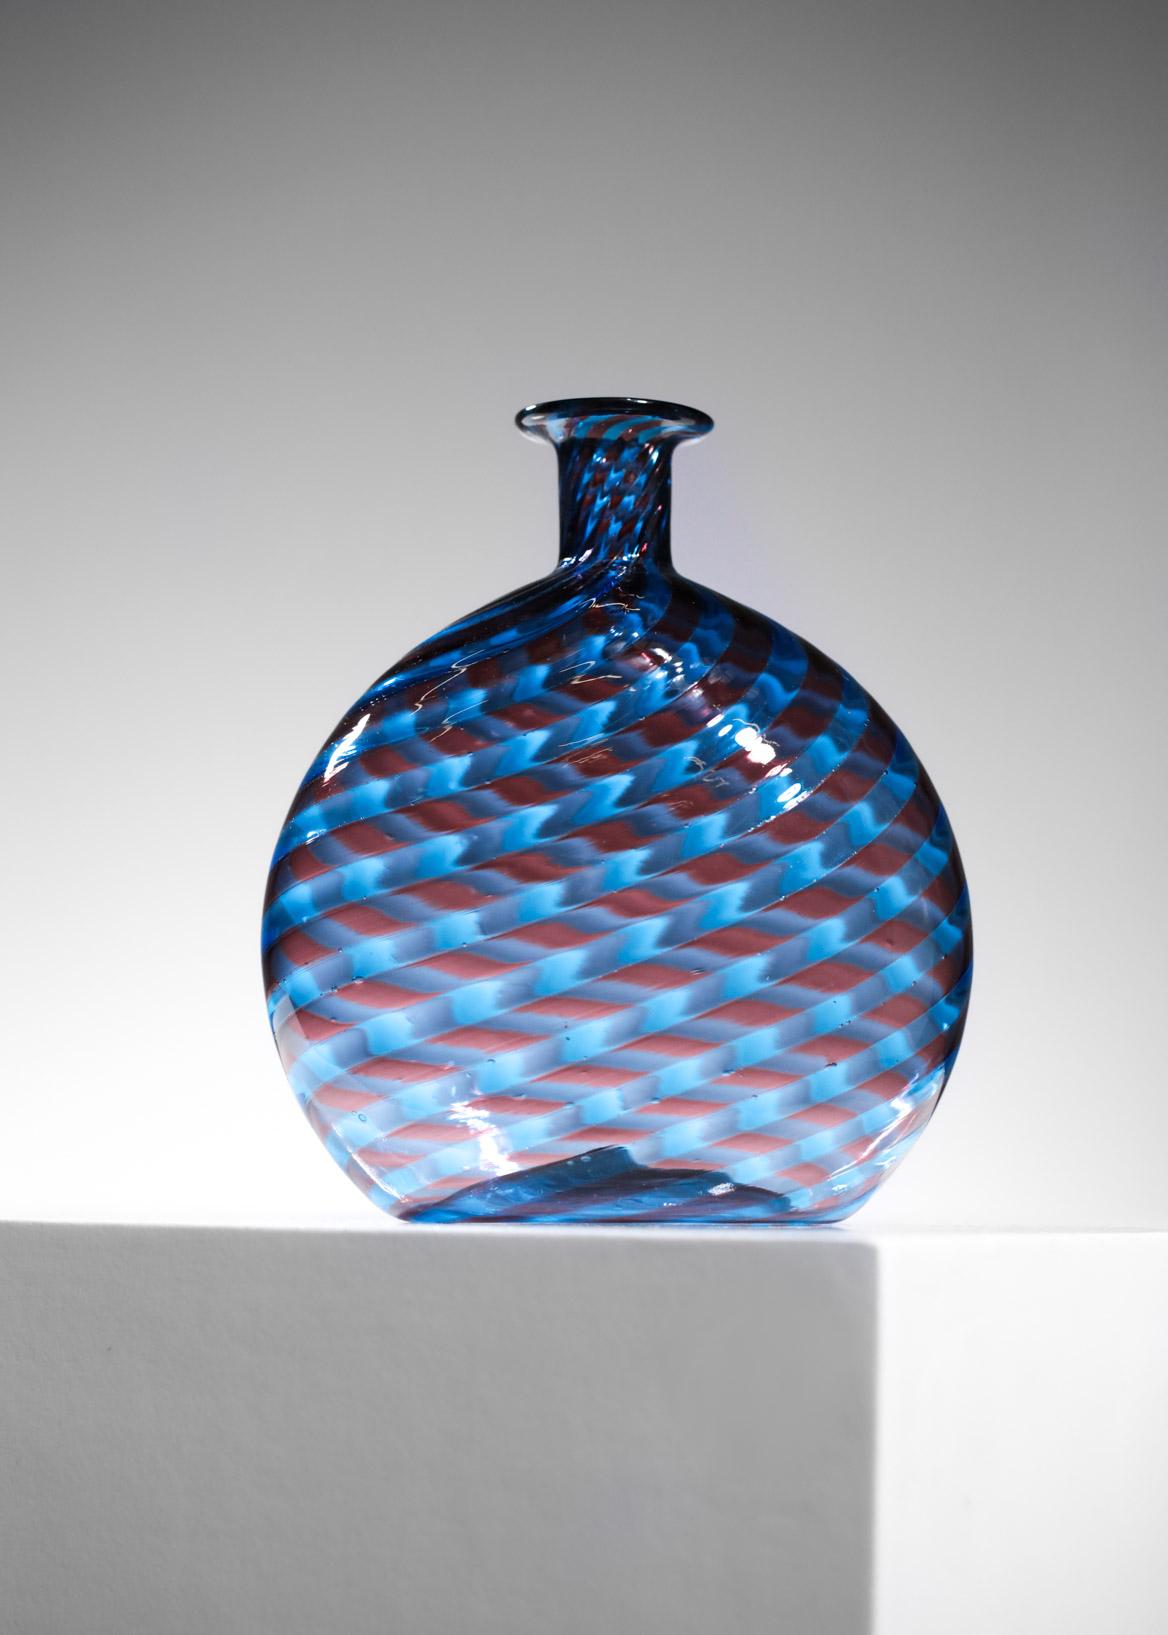 Sehr schöne Vase aus geblasenem Glas aus Murano aus den 60er Jahren. Handgefertigt (Spur des Stempels unter der Vase) mit sehr schönen blauen und roten Farben, die sich vermischen, um einen geometrischen und sehr dekorativen Aspekt der Vase zu